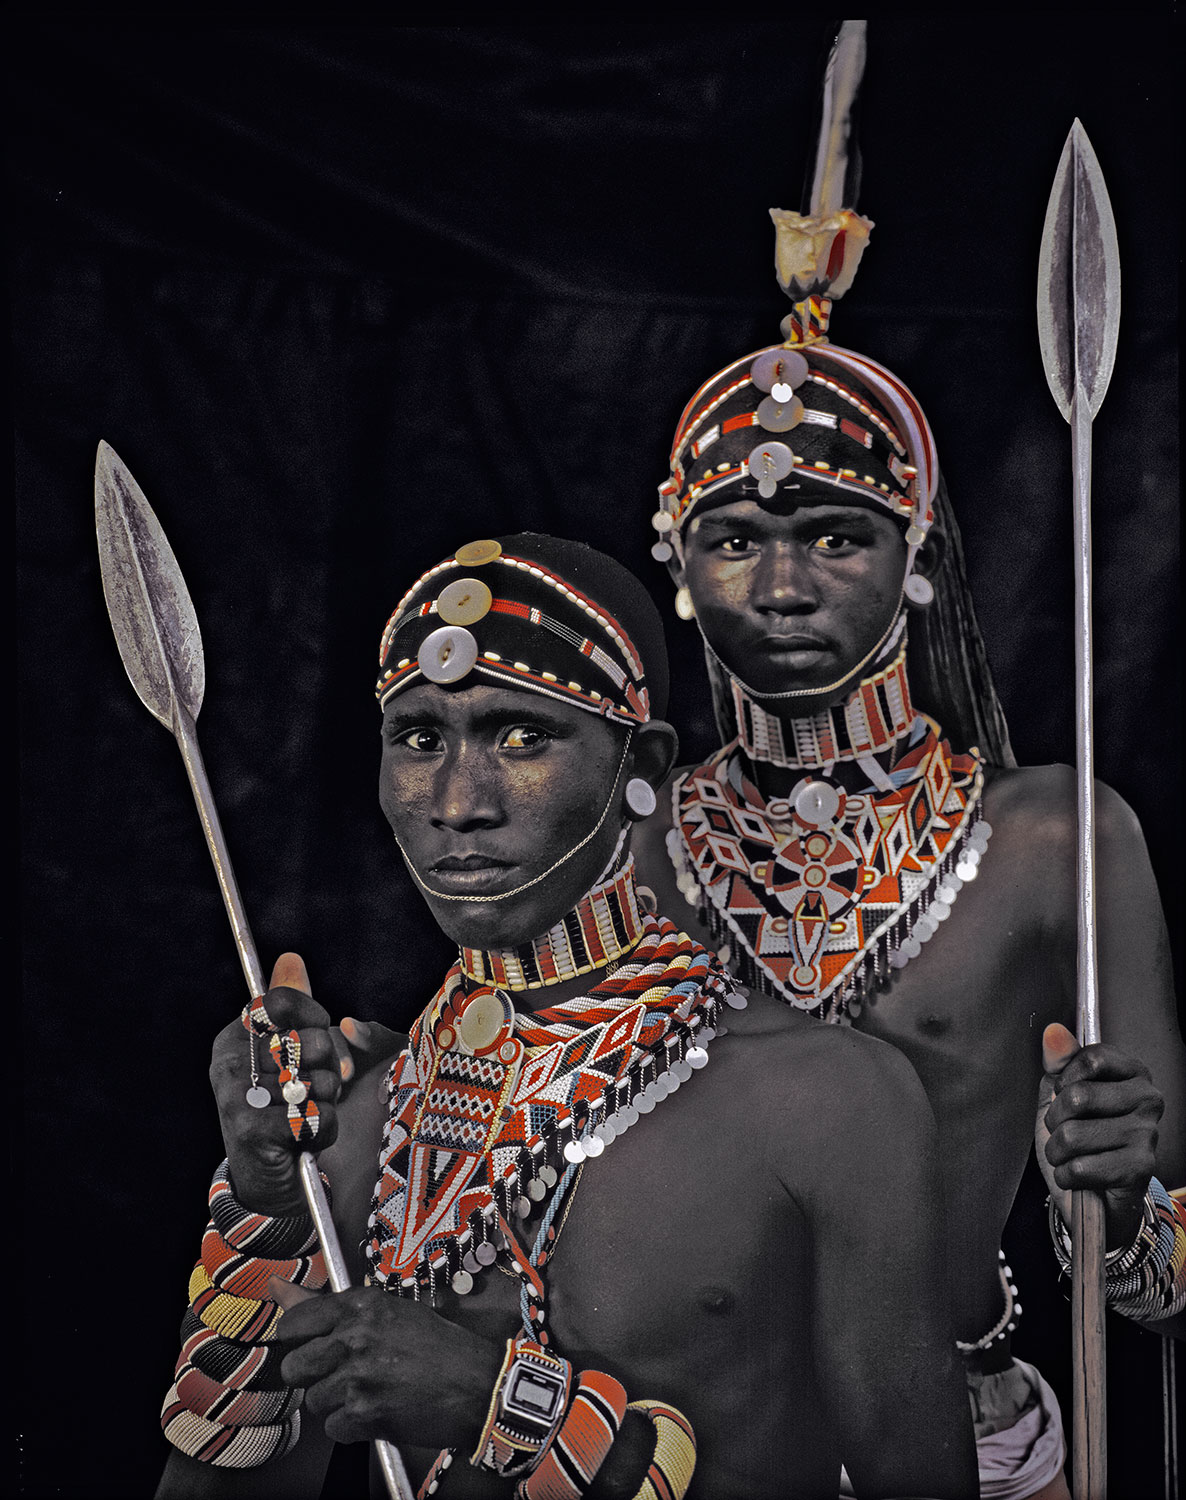 3年时间探访31个原始部落,他用镜头展现缤纷多样的人类文明之美